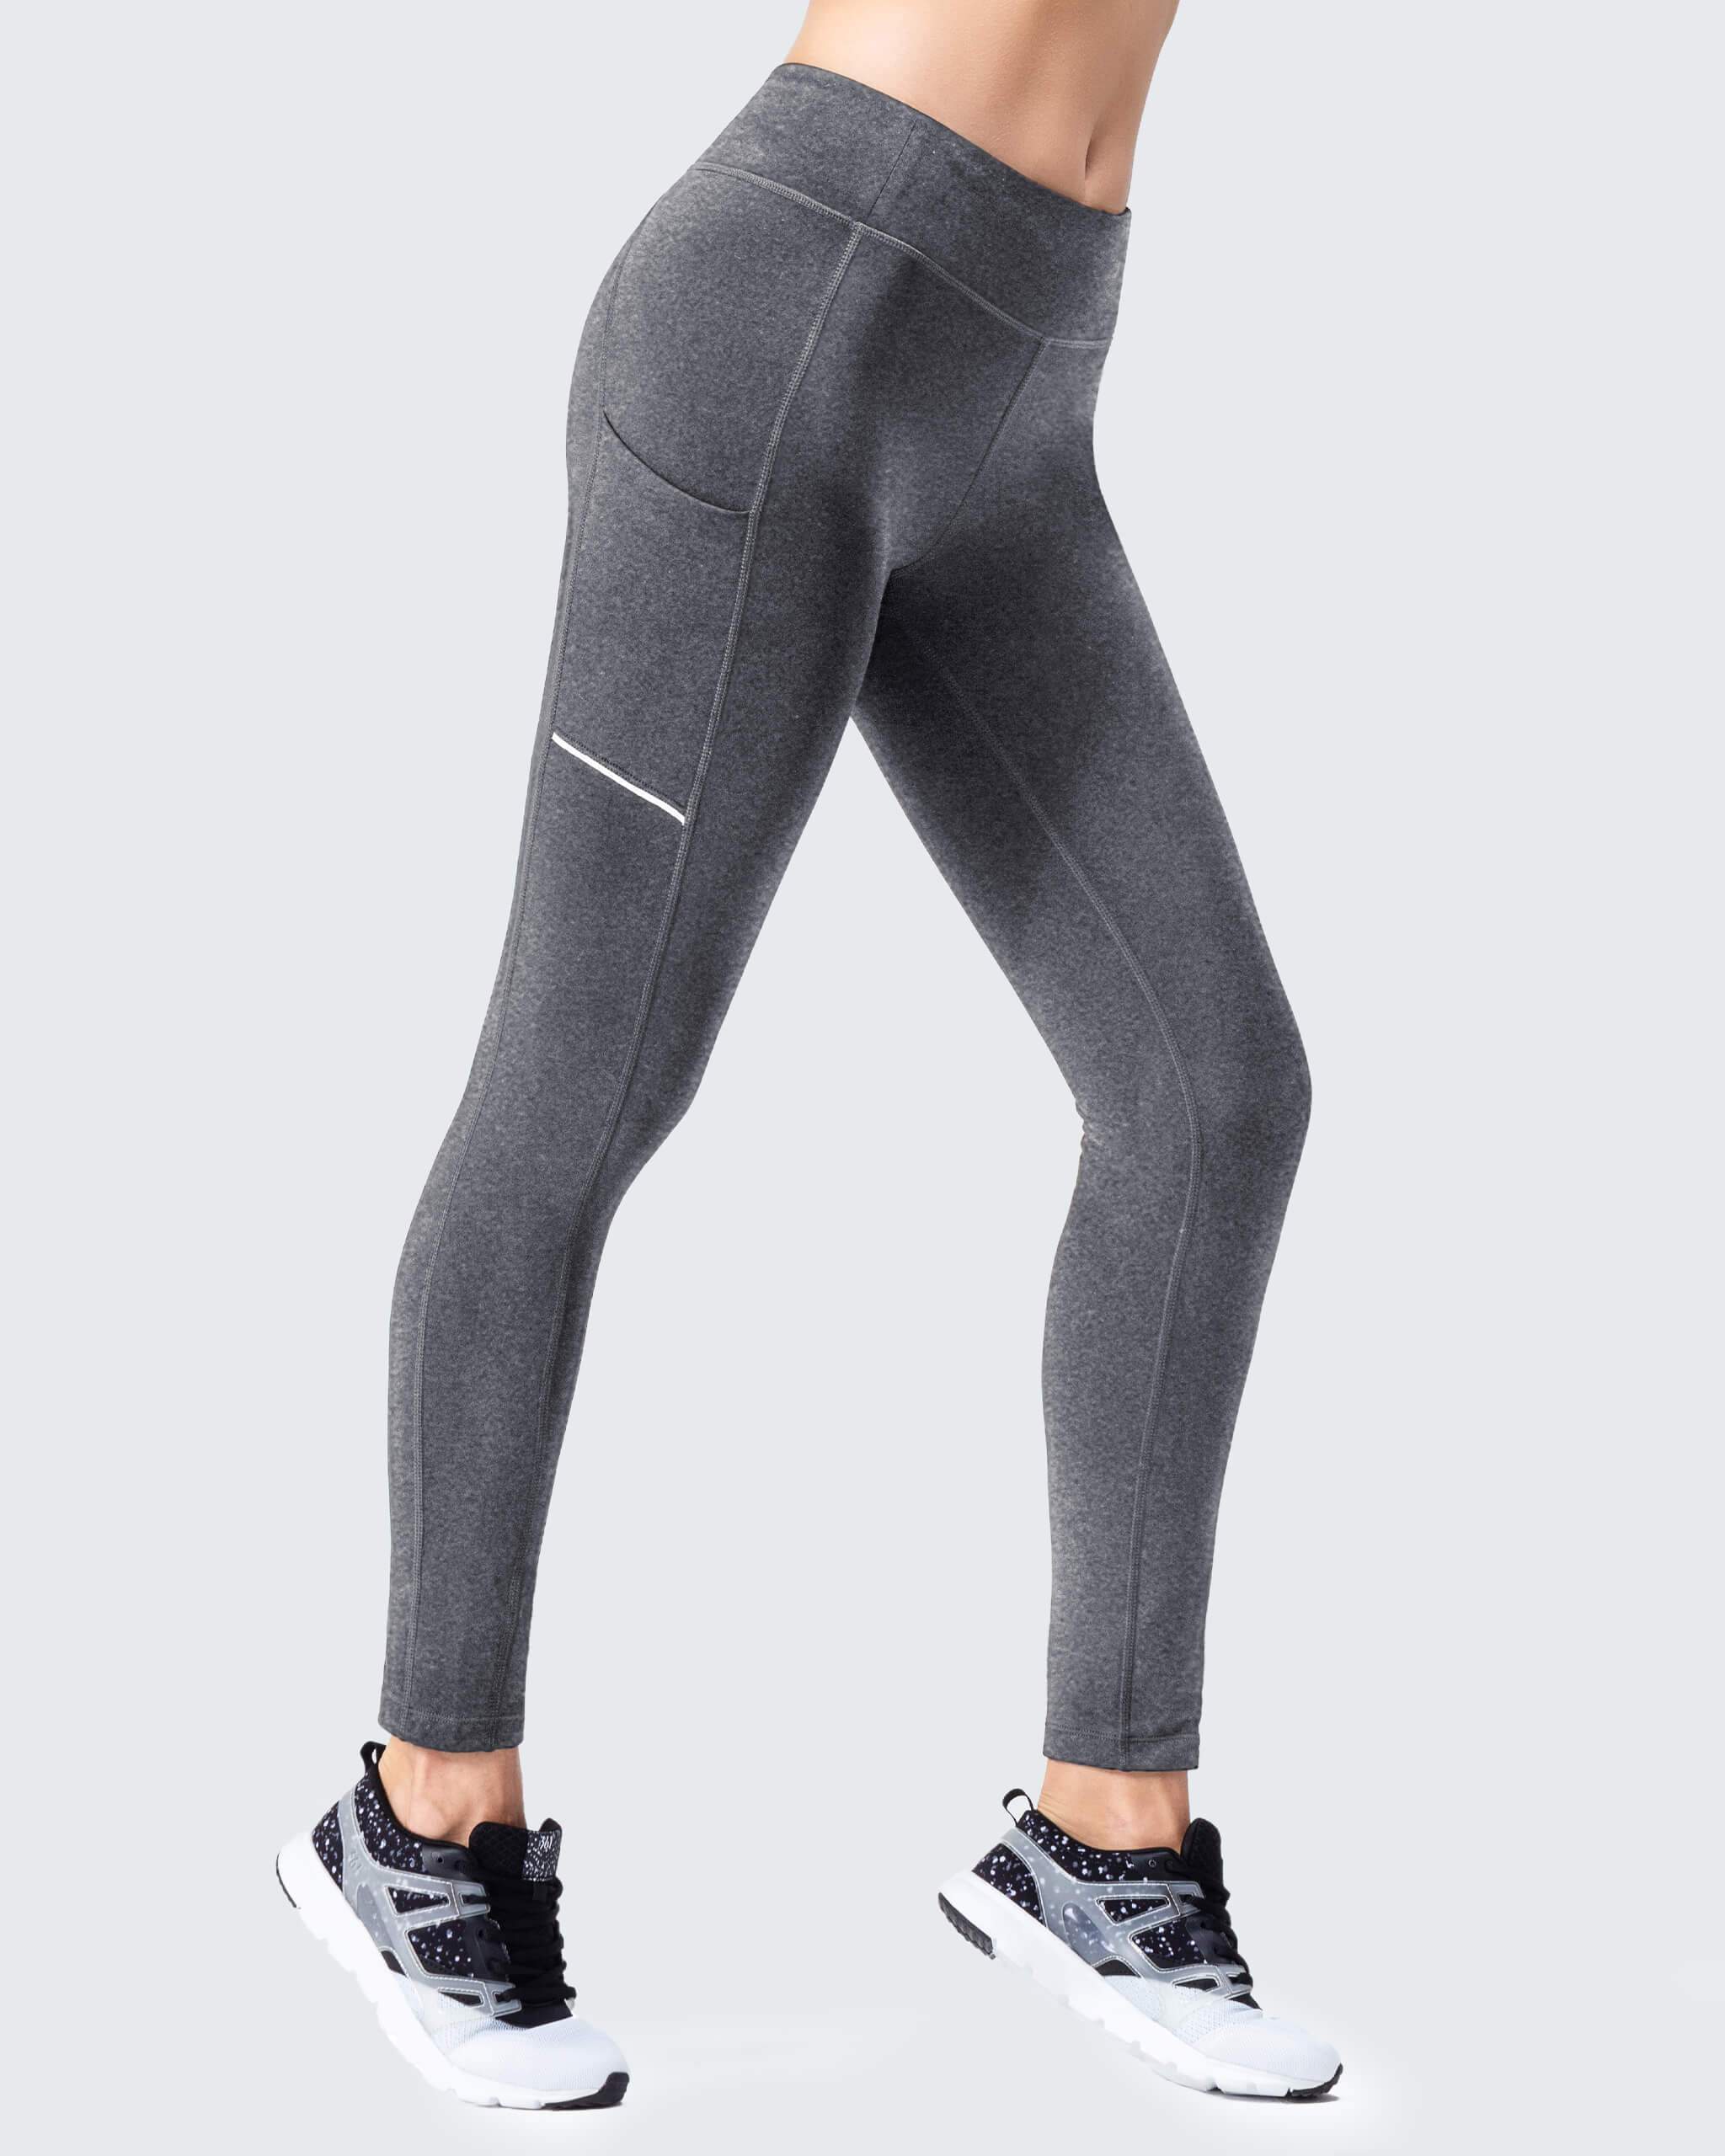 Buy NAVISKIN Women's Bootcut Yoga Pants Bootleg Pants Back Pockets